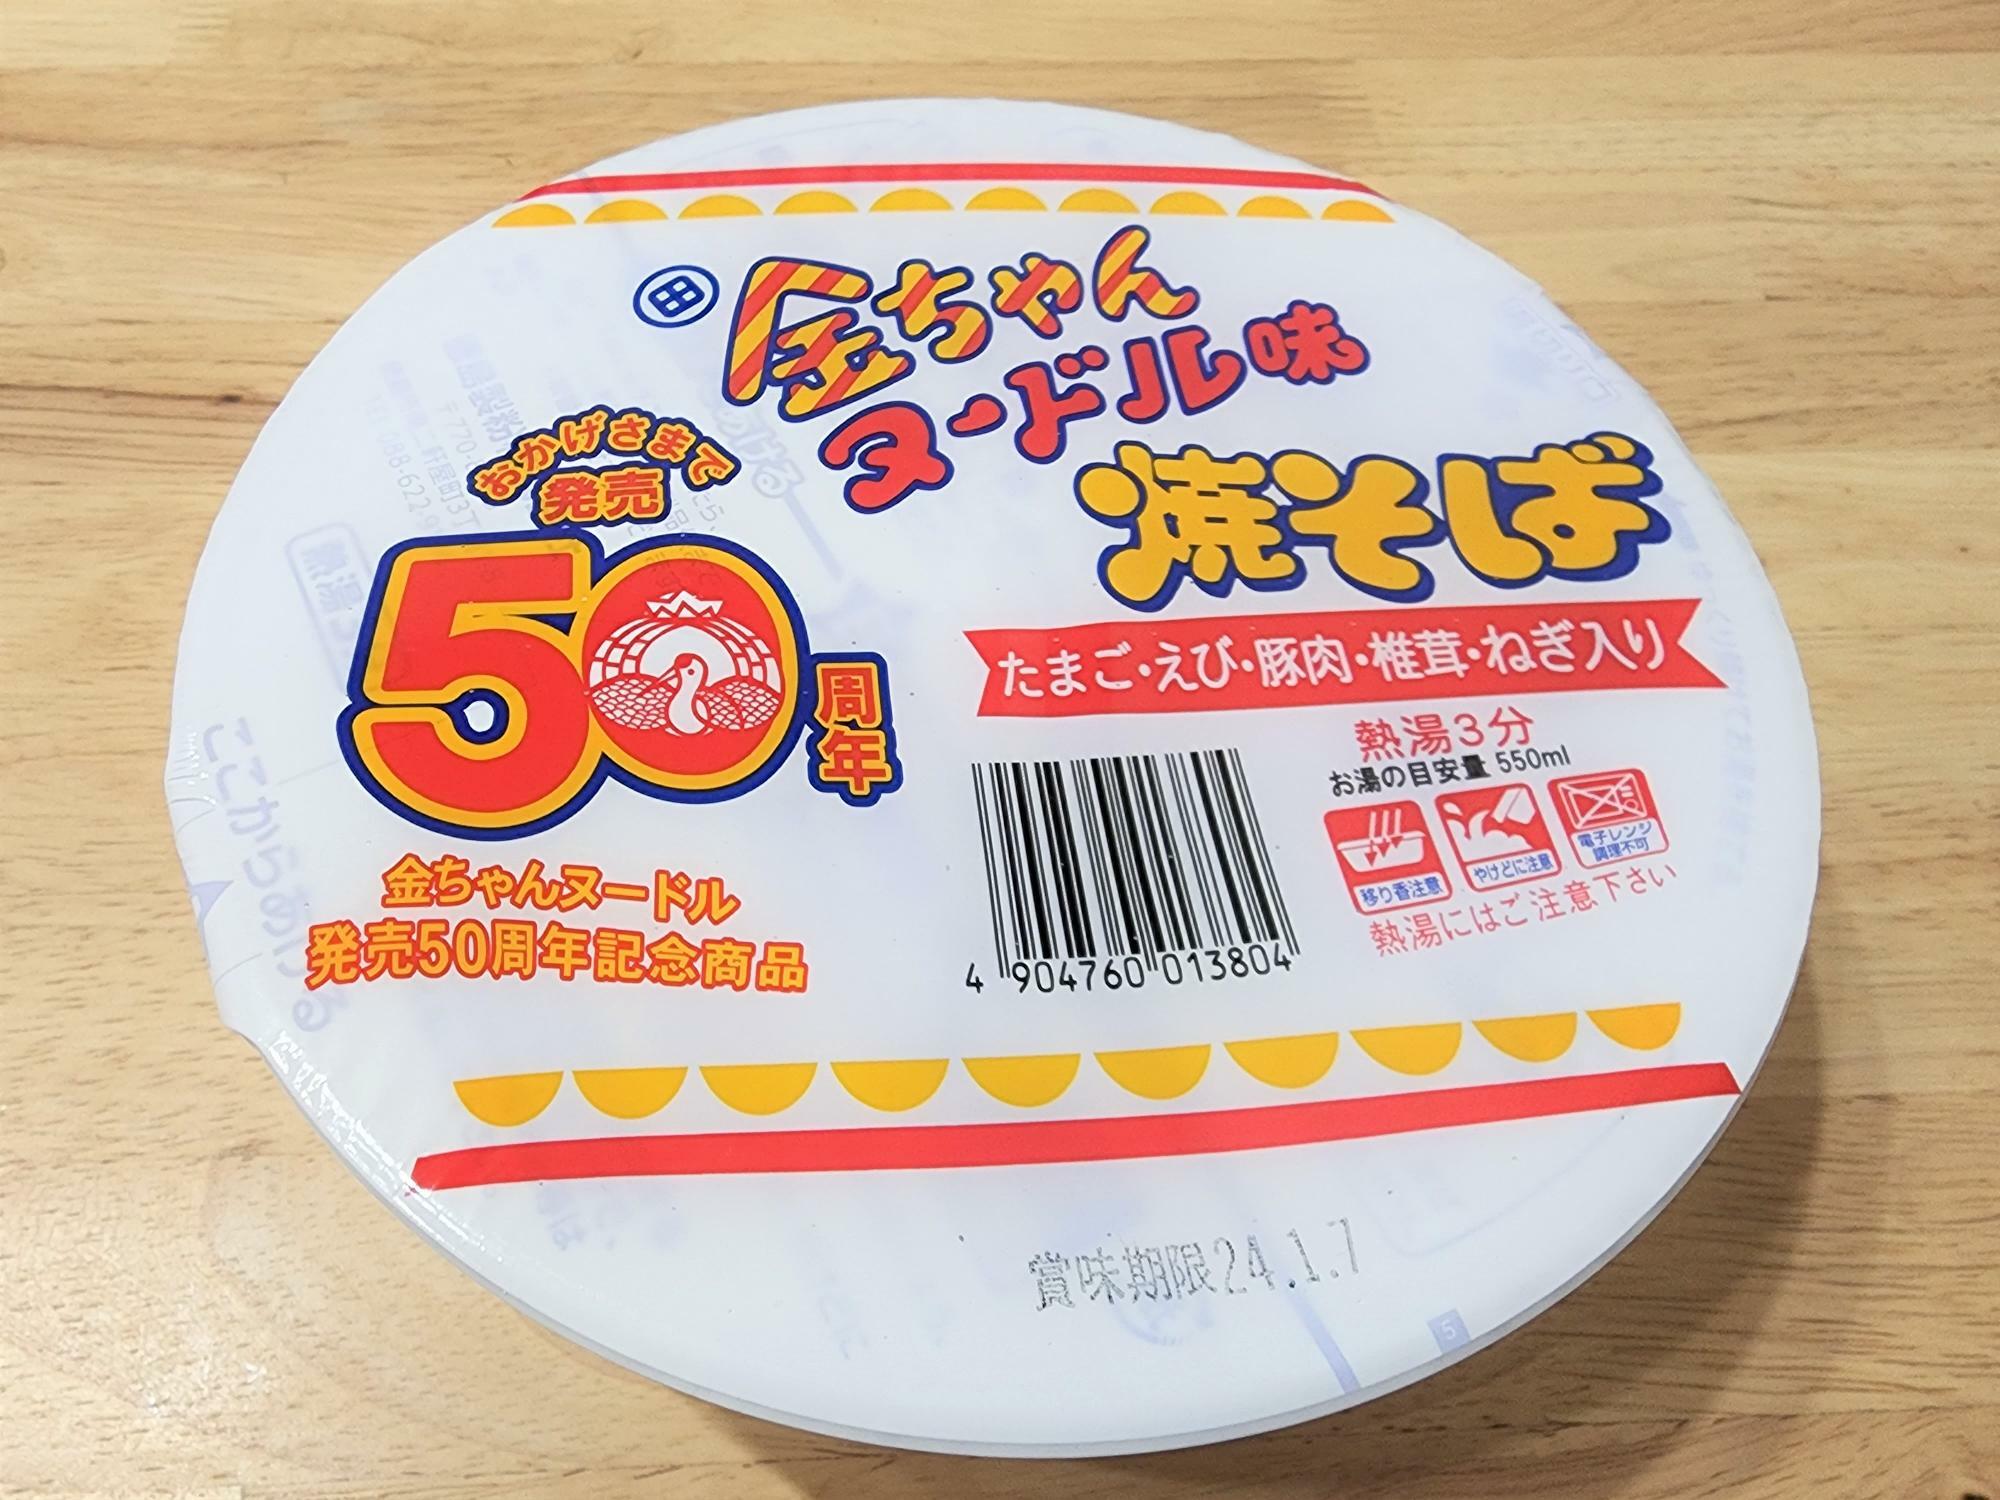 発売50周年記念商品として新発売された「金ちゃんヌードル味焼そば」。